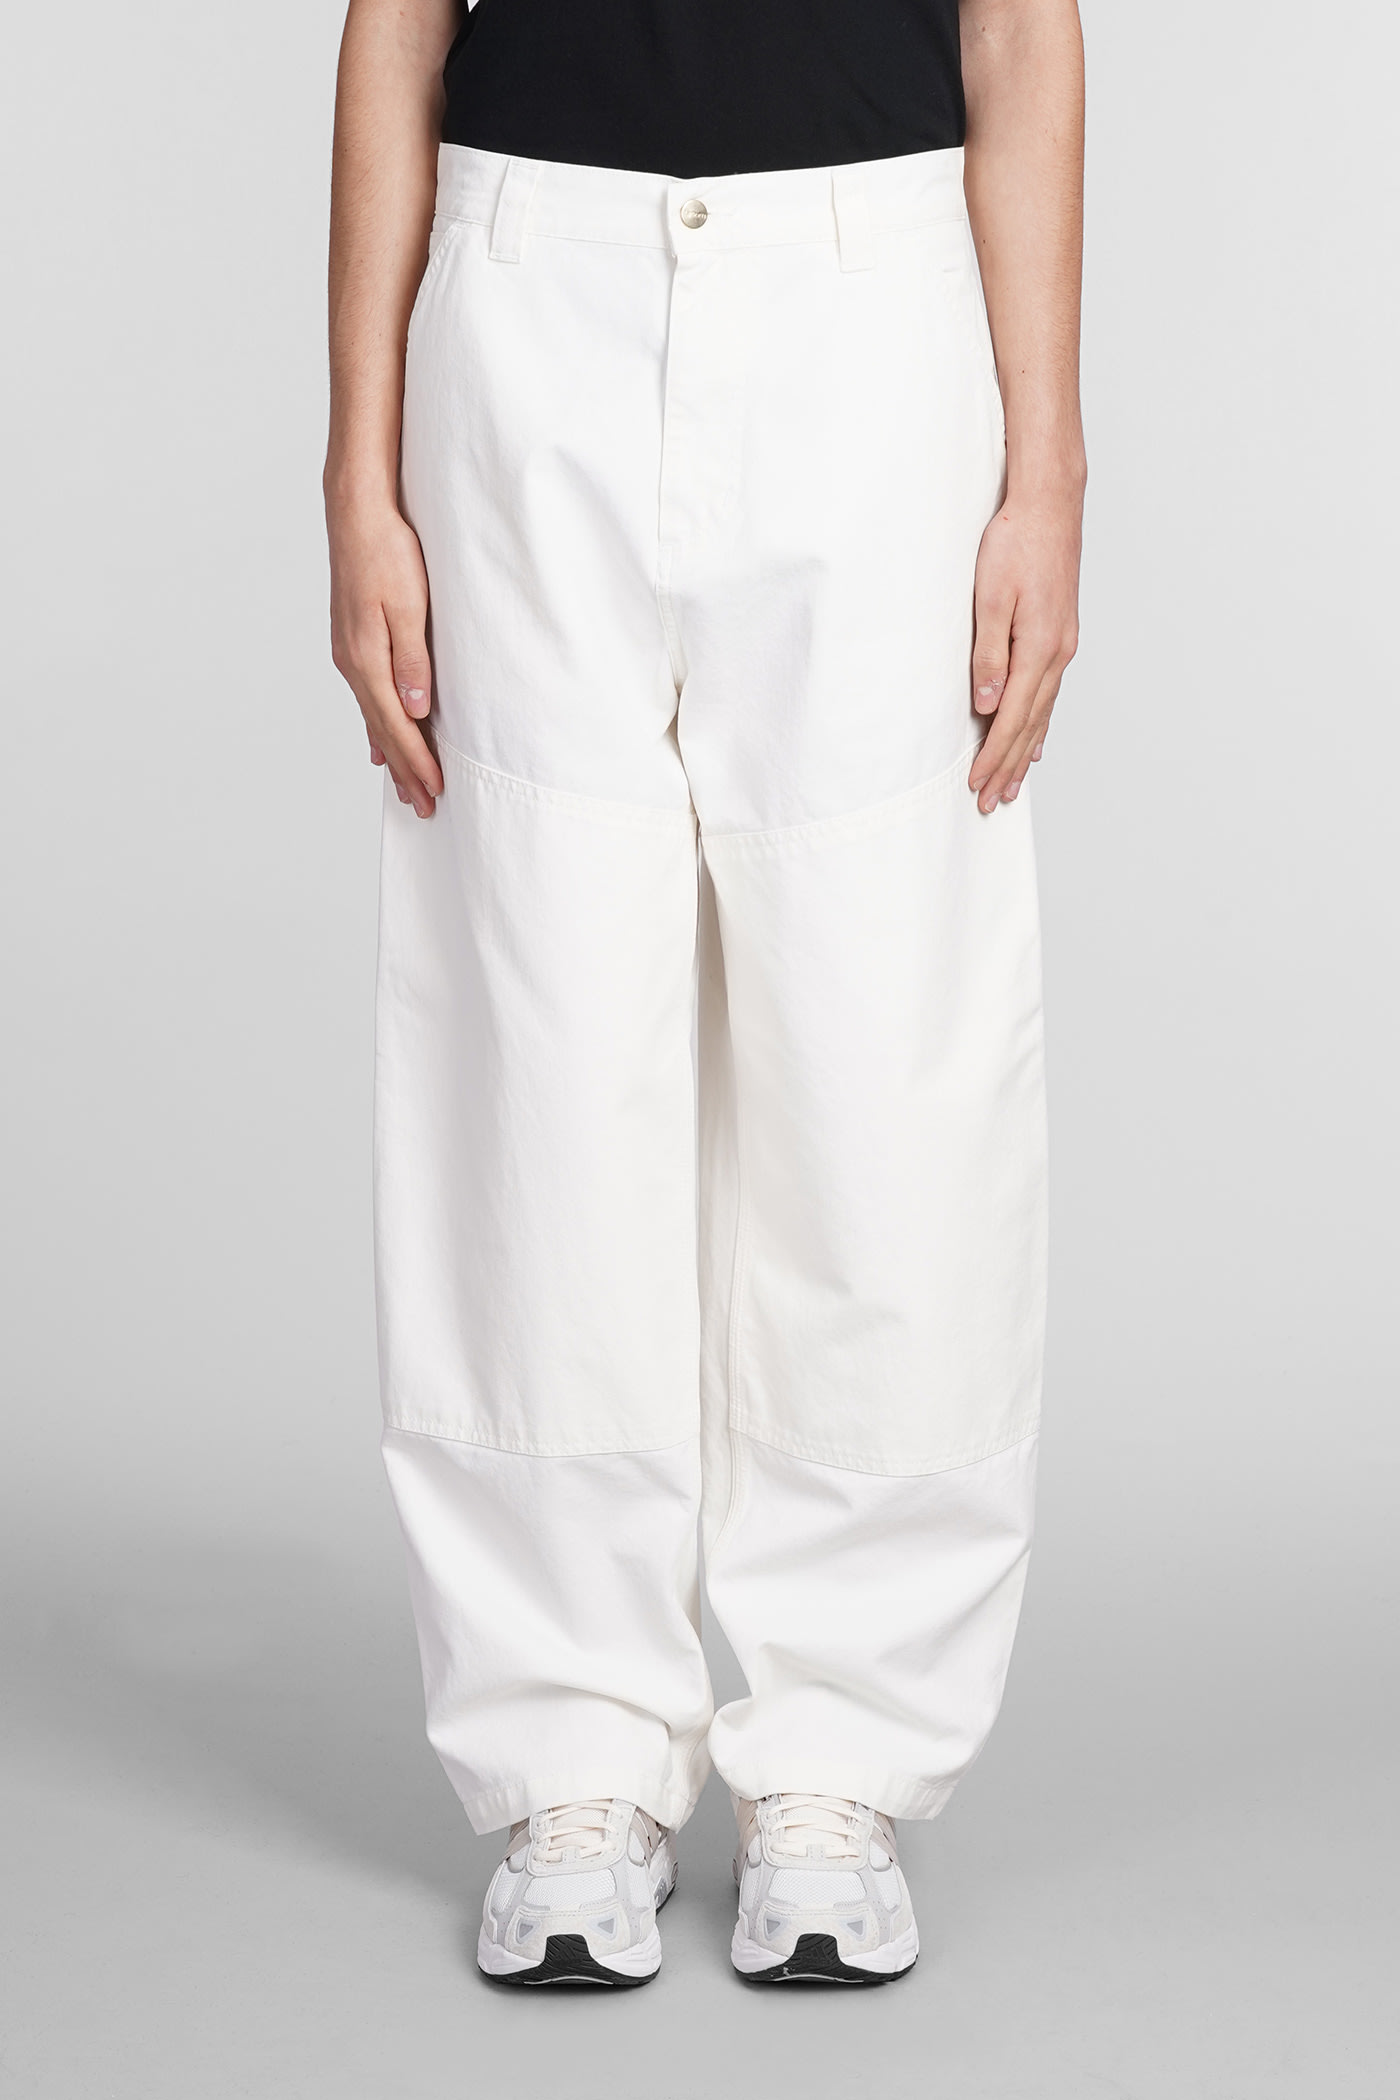 Carhartt Pants In Beige Cotton